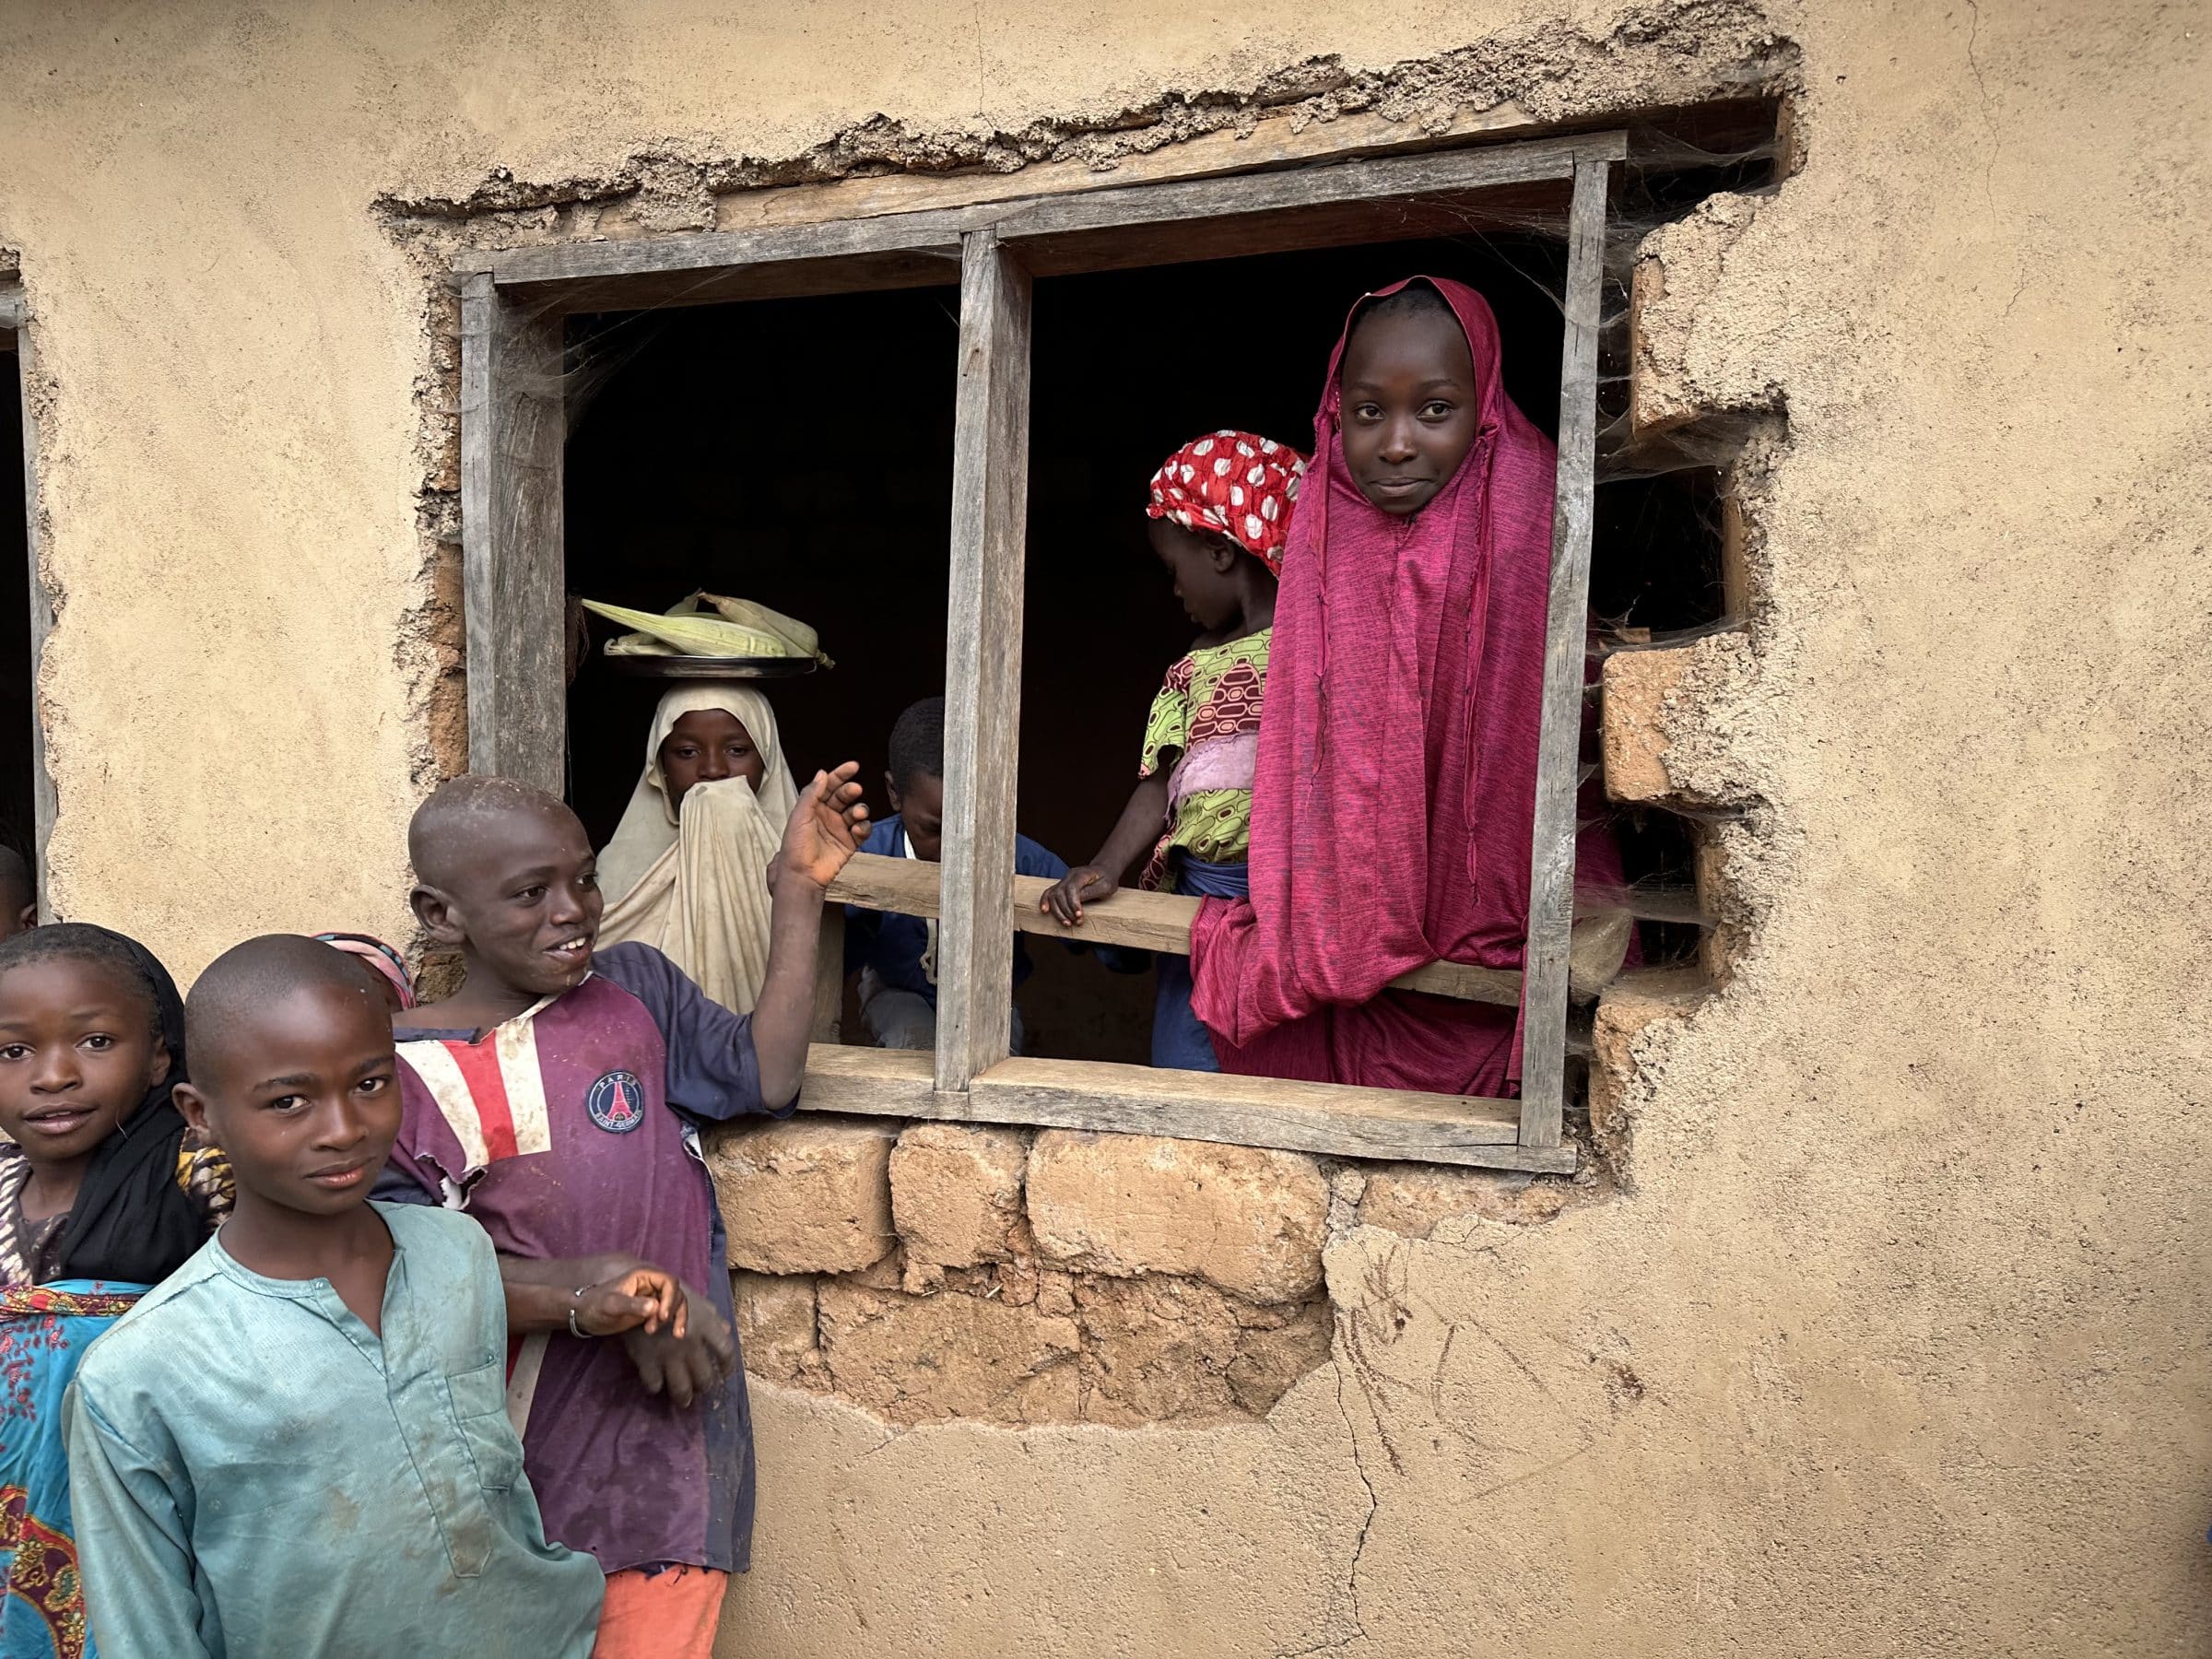 Children in the window | Overlanding in Nigeria